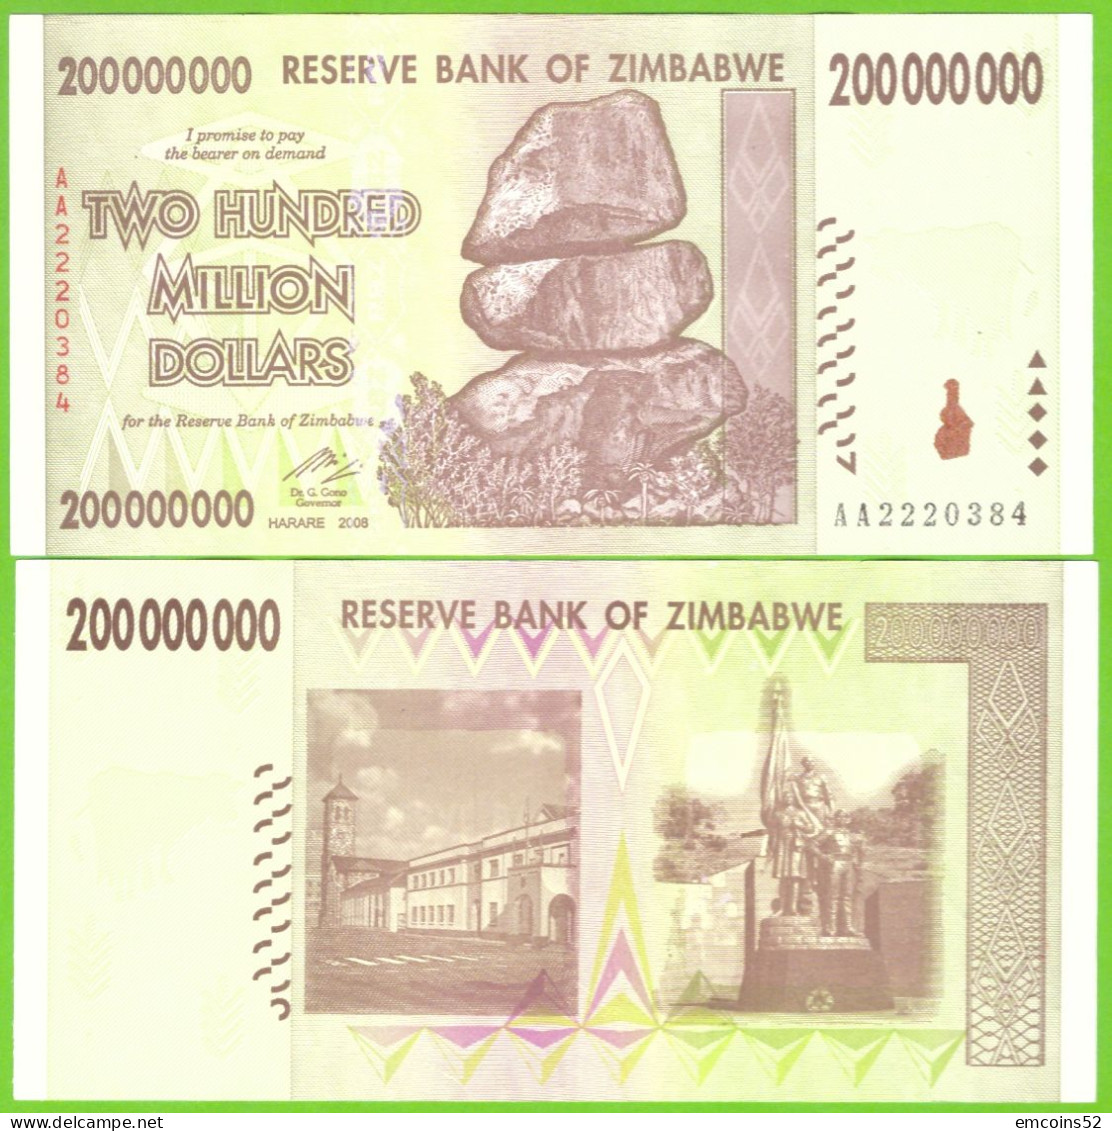 ZIMBABWE 200000000 DOLLARS 2008  P-81 UNC - Simbabwe